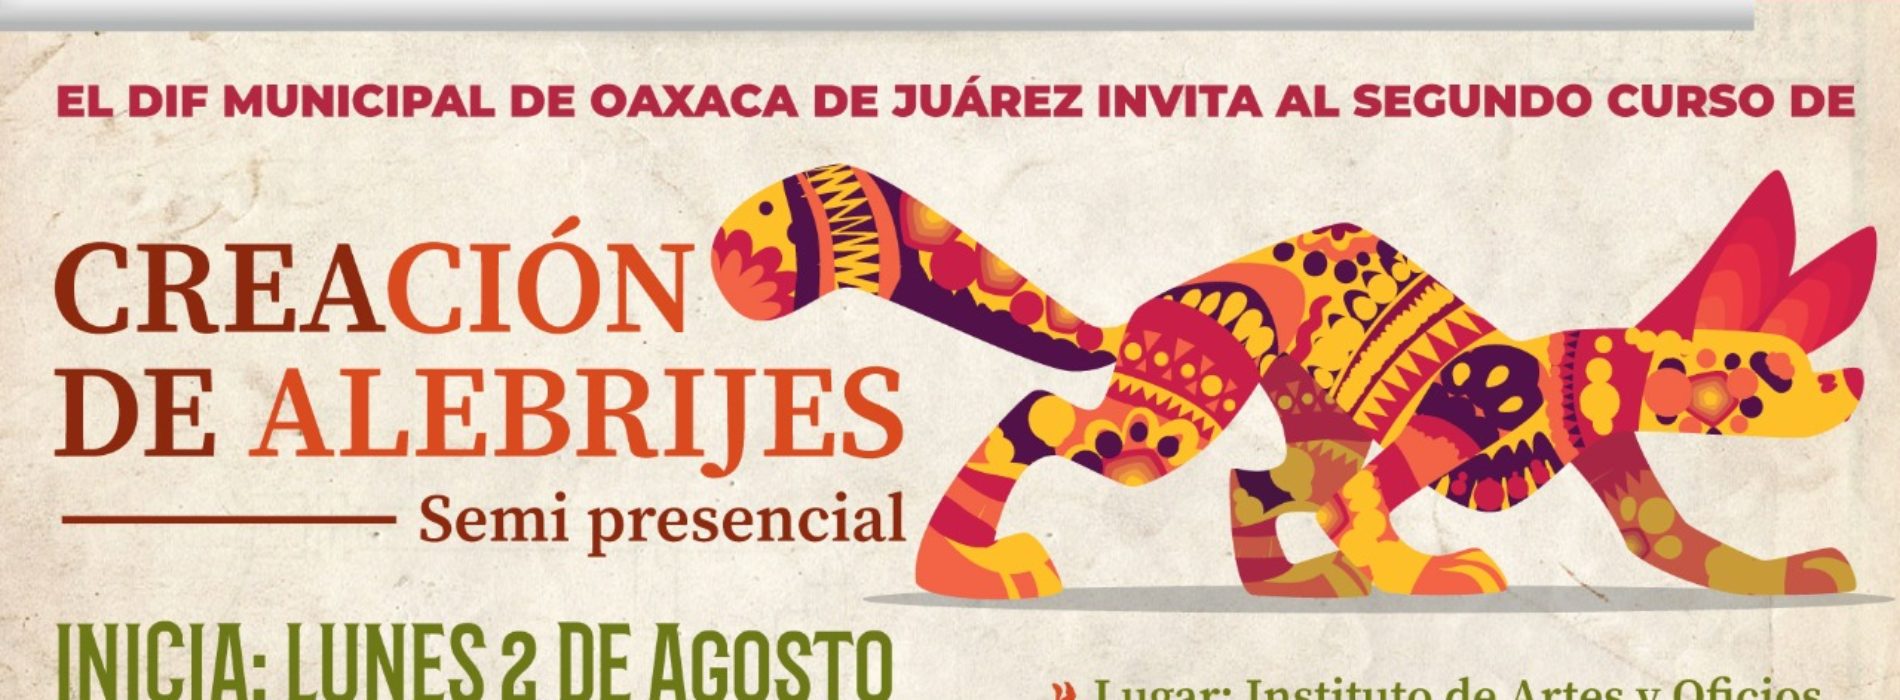 DIF Municipal de Oaxaca de Juárez invita al segundo taller de “Creación de Alebrijes”